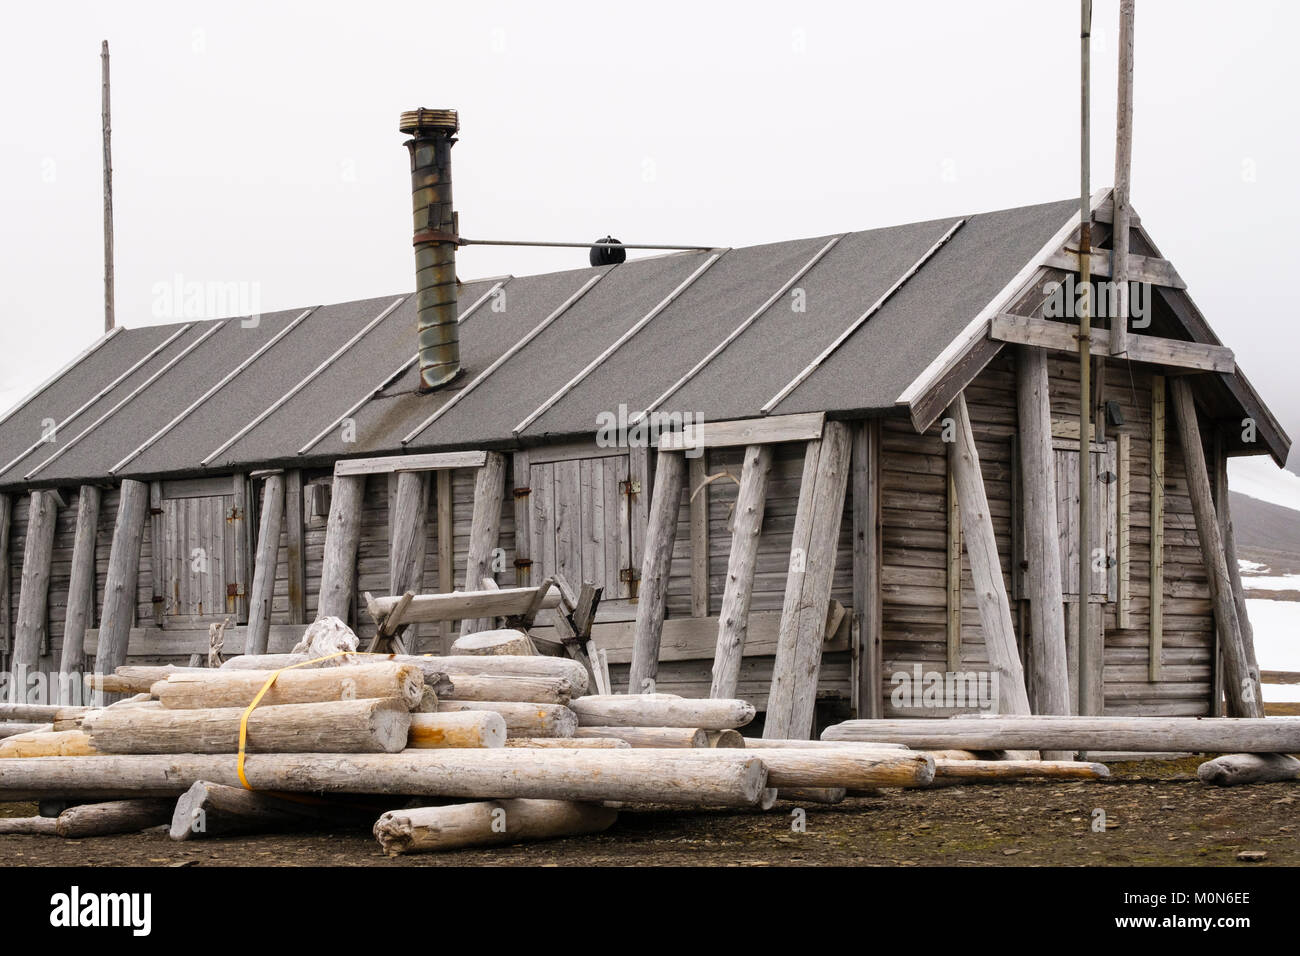 Bamsebu vecchia di caccia alle balene Beluga hut sul telecomando costa artica in estate. Ahlstrandhalvoya, Bellsund, isola Spitsbergen, arcipelago delle Svalbard, Norvegia Foto Stock